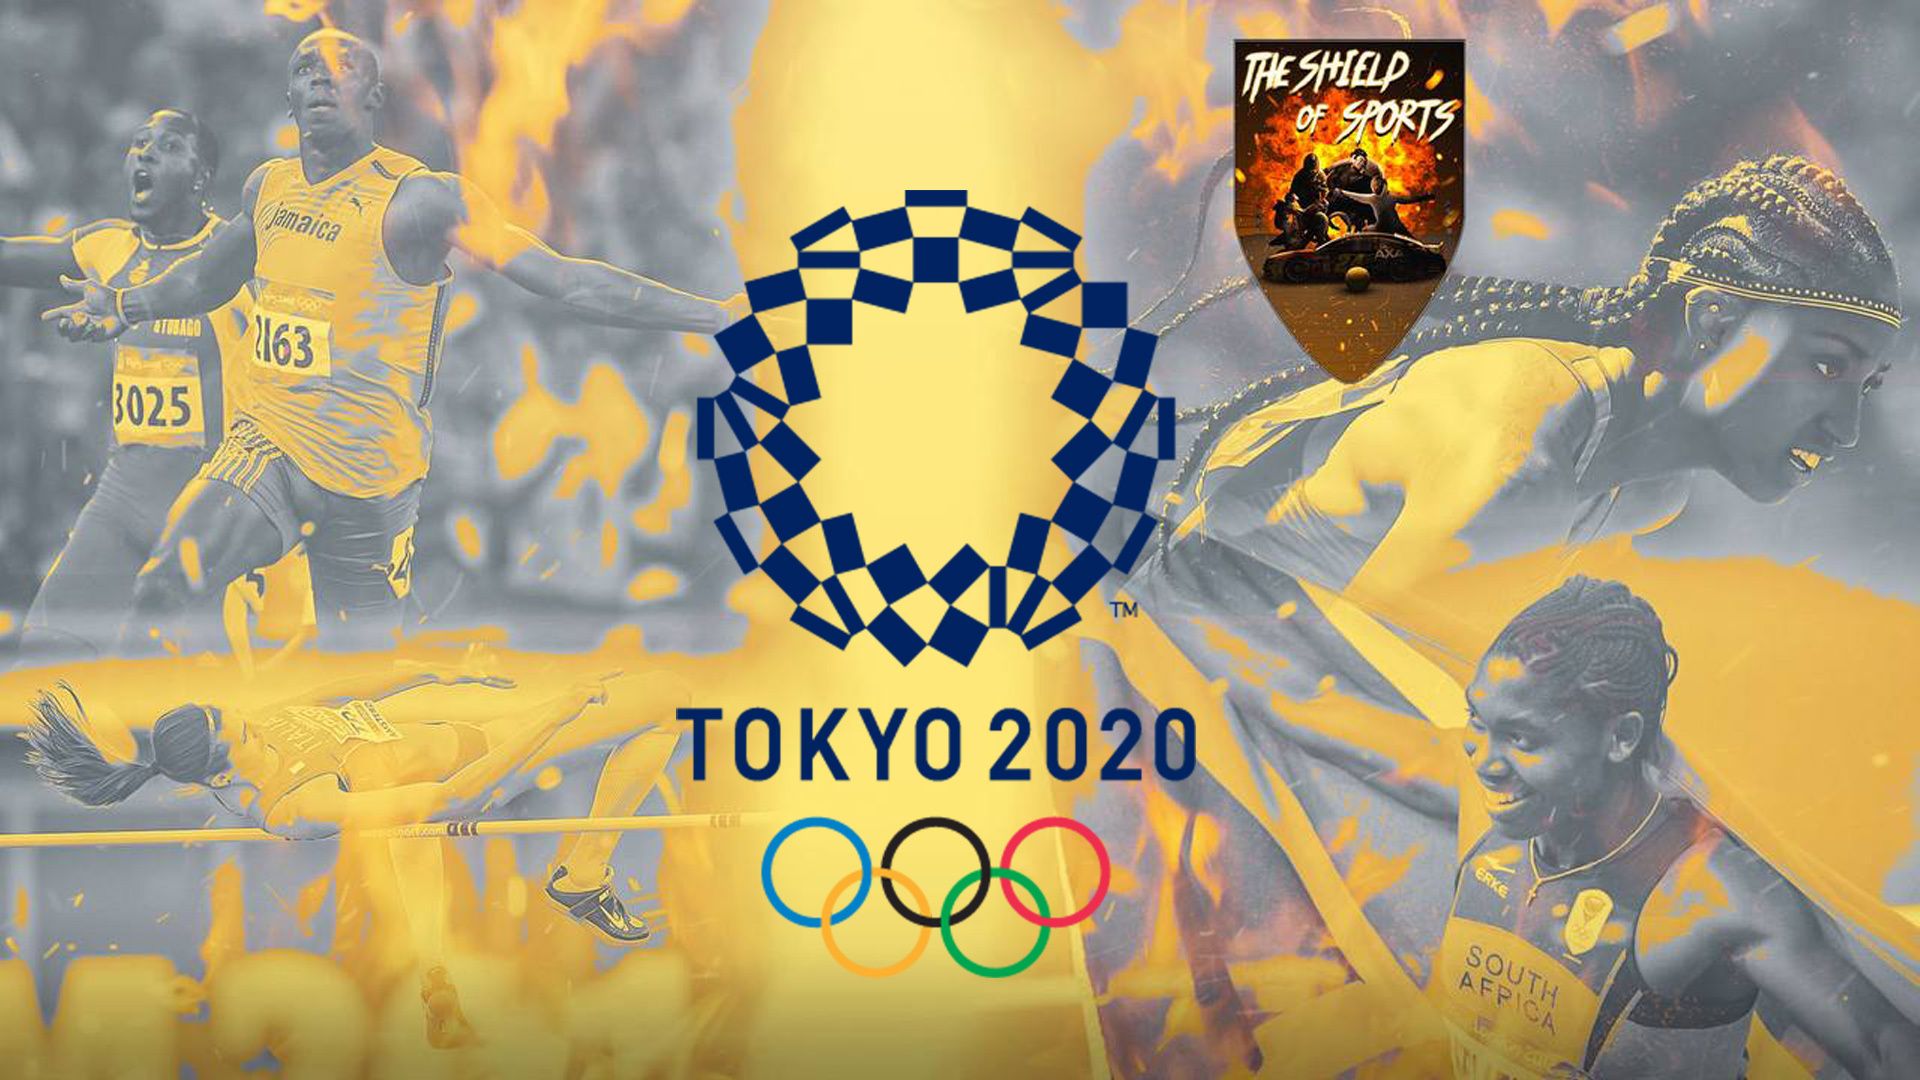 Giappone medaglia d'oro nel Softball Tokyo 2020